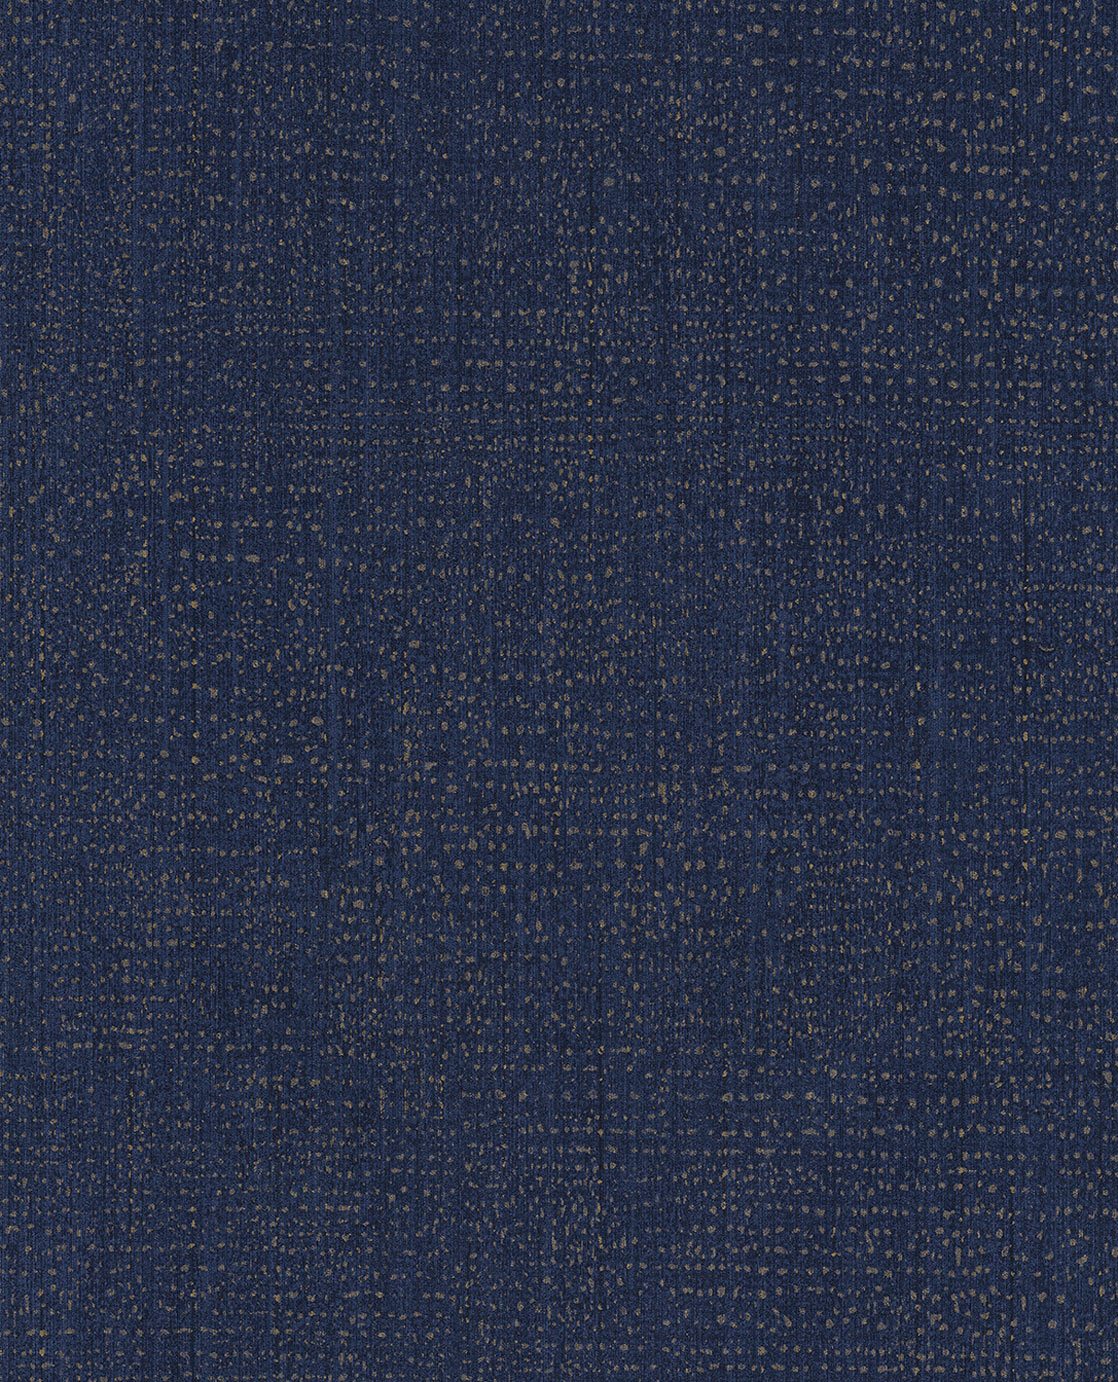 Dotted Texture - Dark Blue